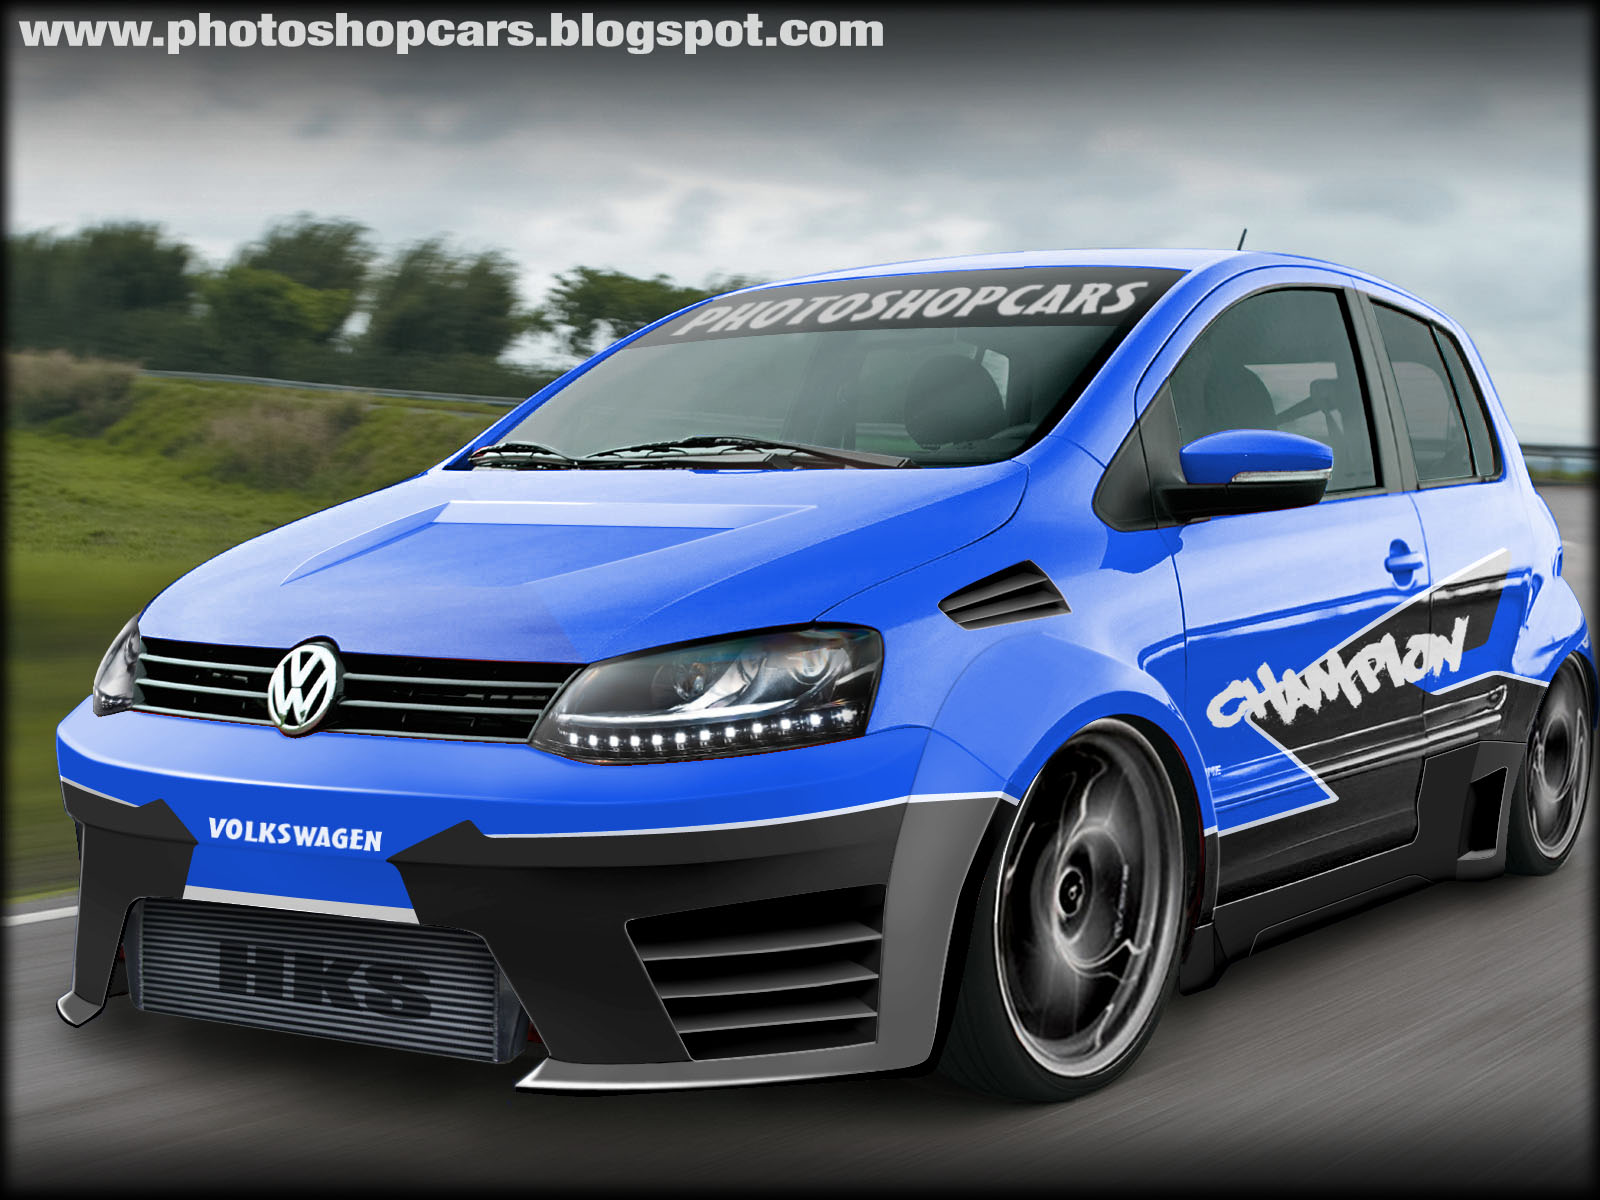 Novo VW Fox 2010 tuning racing rebaixado tuning virtual